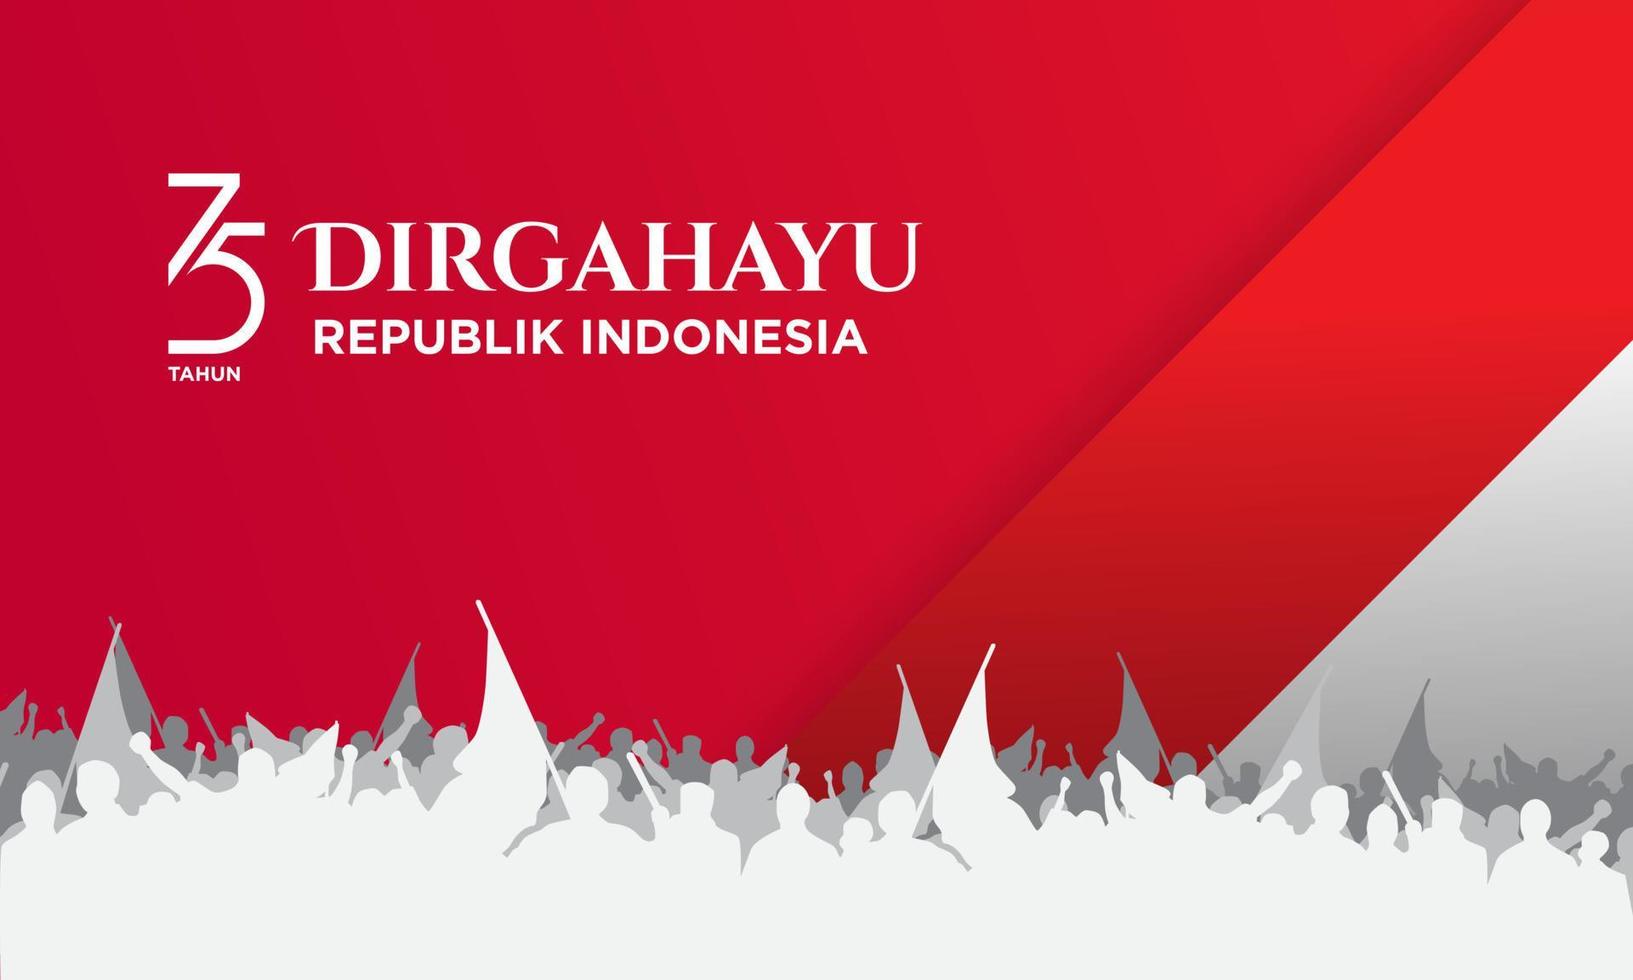 Indonesische onafhankelijkheidsdag achtergrond sjabloon. vector